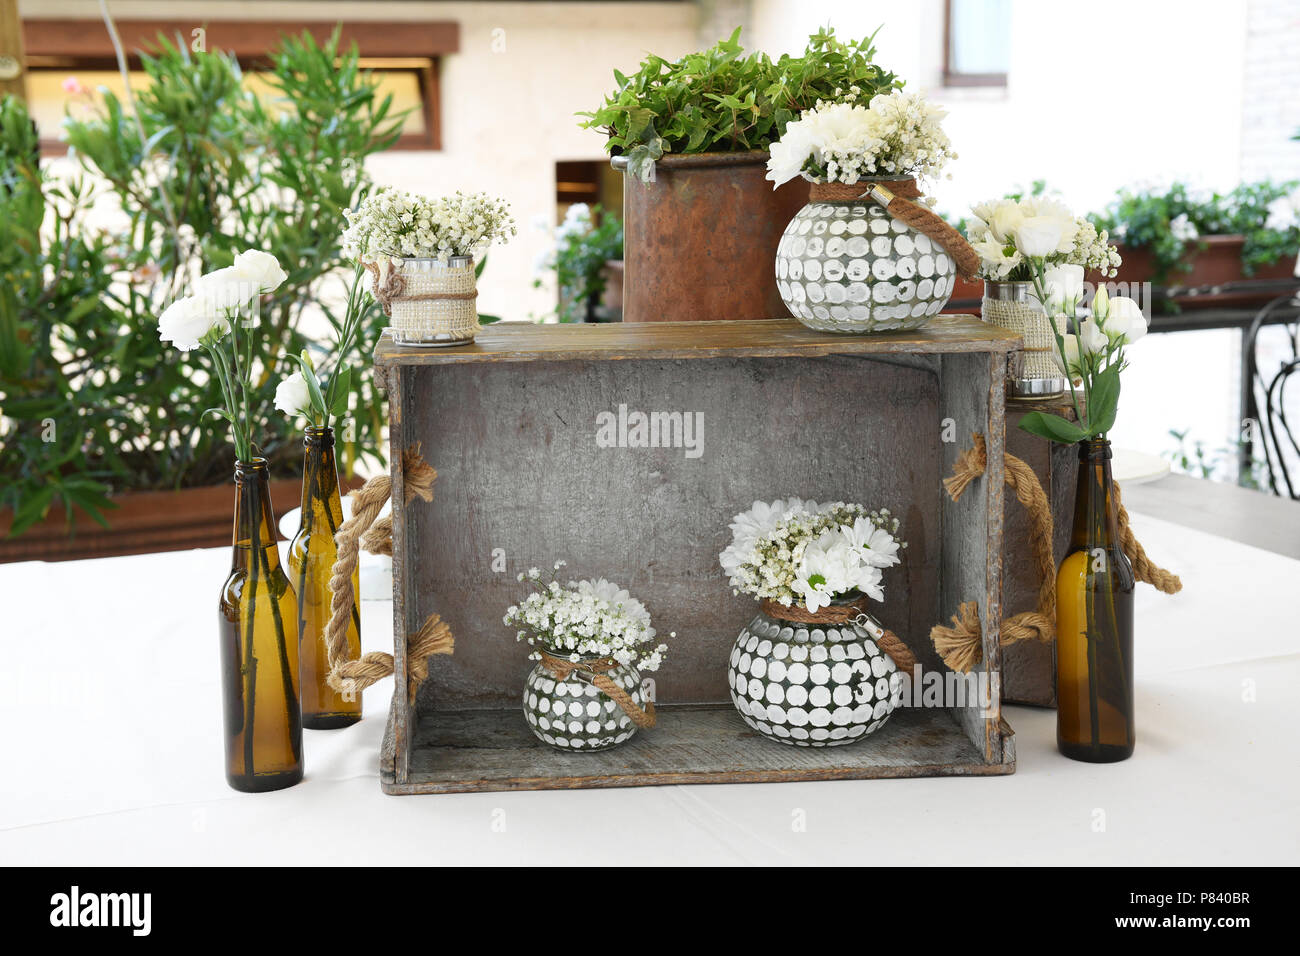 Florale Komposition von rein weißen Blüten in großen Flaschen und passende Weiß gestaltete Blumentöpfe, Vasen auf einem urigen freistehende Holzregal mit p Stockfoto